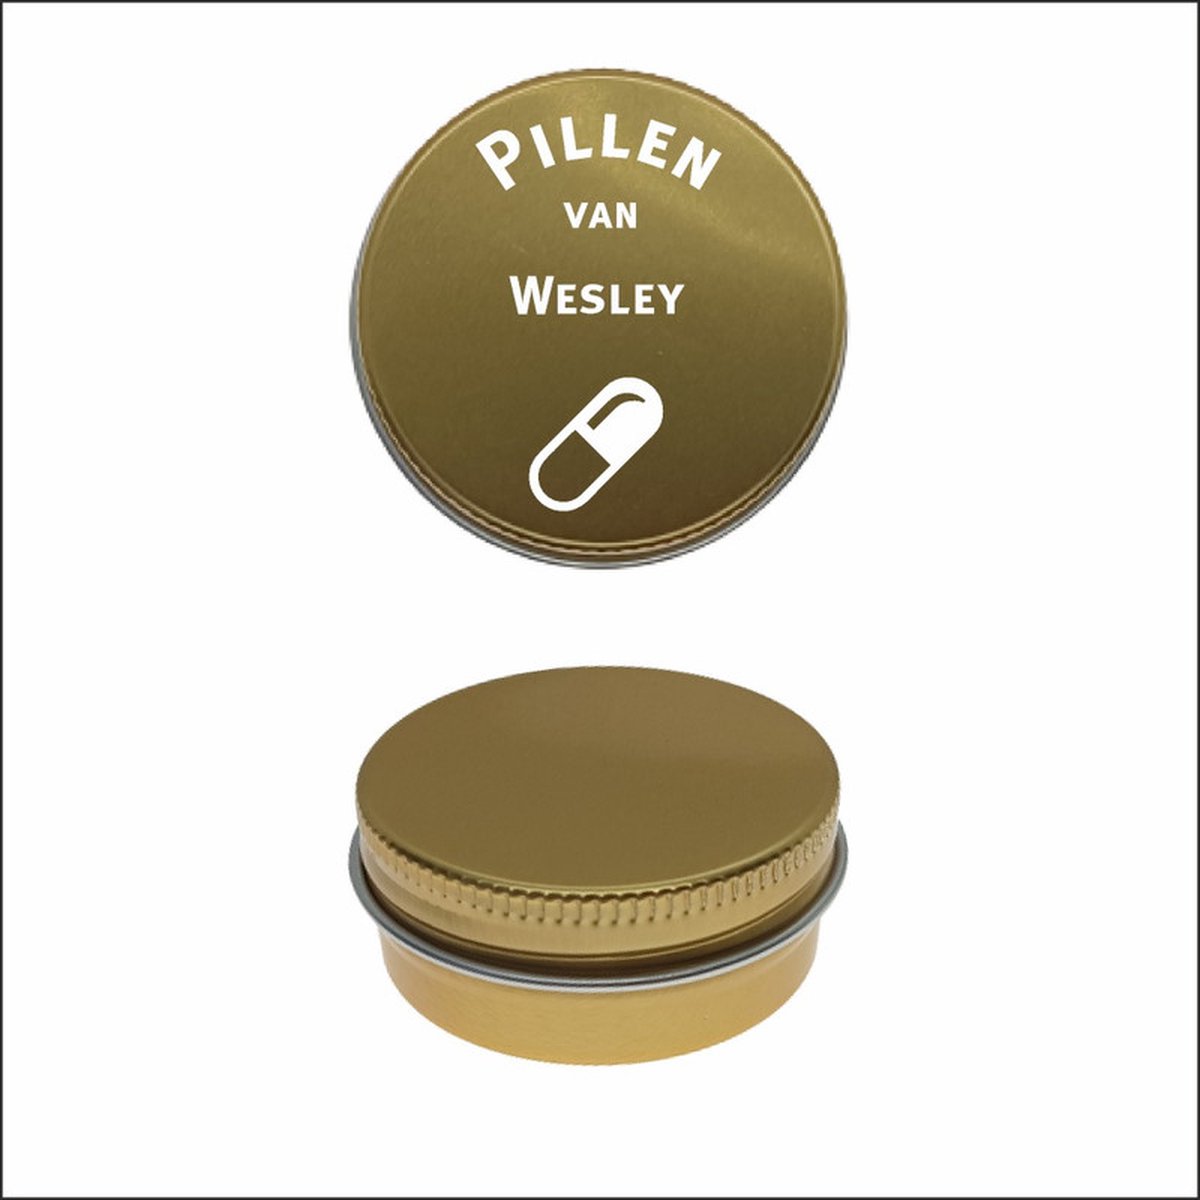 Pillen Blikje Met Naam Gravering - Wesley